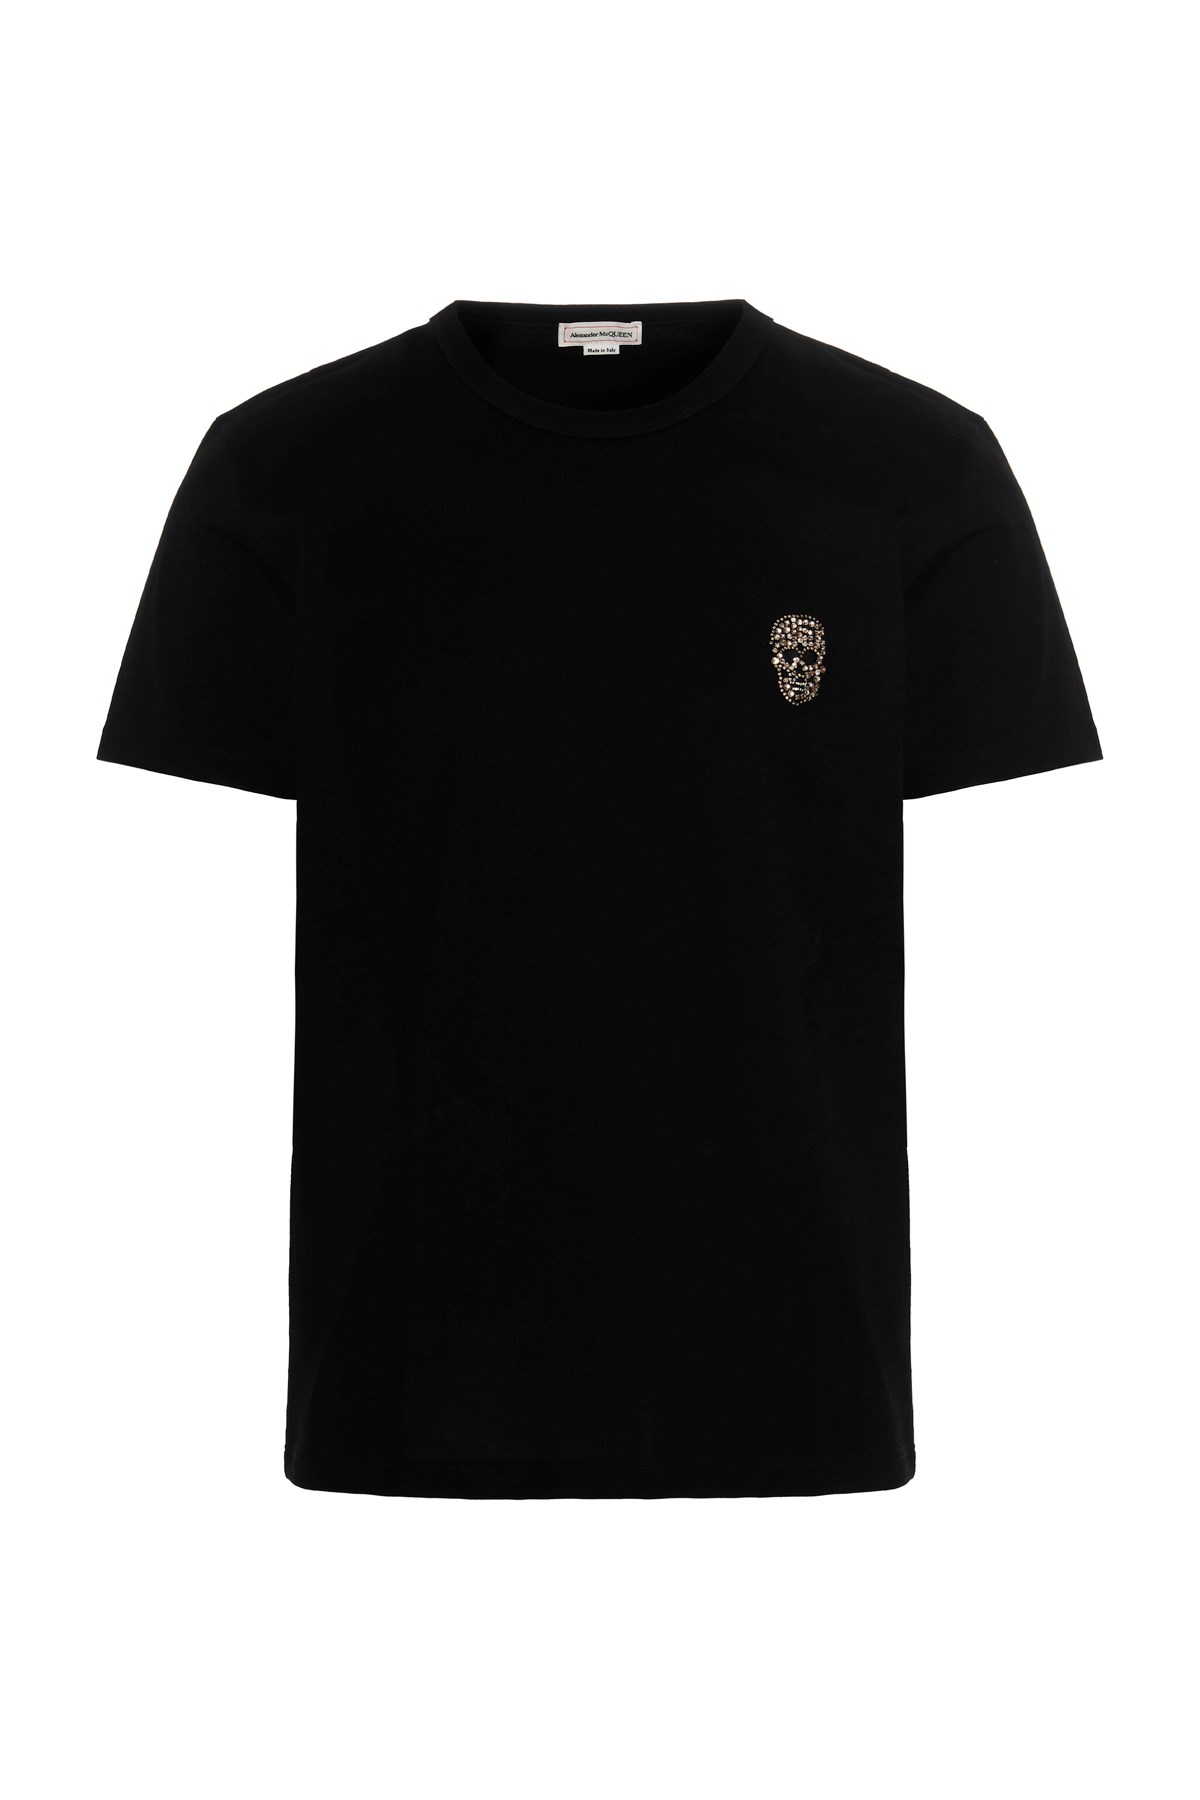 ALEXANDER MCQUEEN T-Shirt Mit Edelsteinbesetztem Schädel-Logo